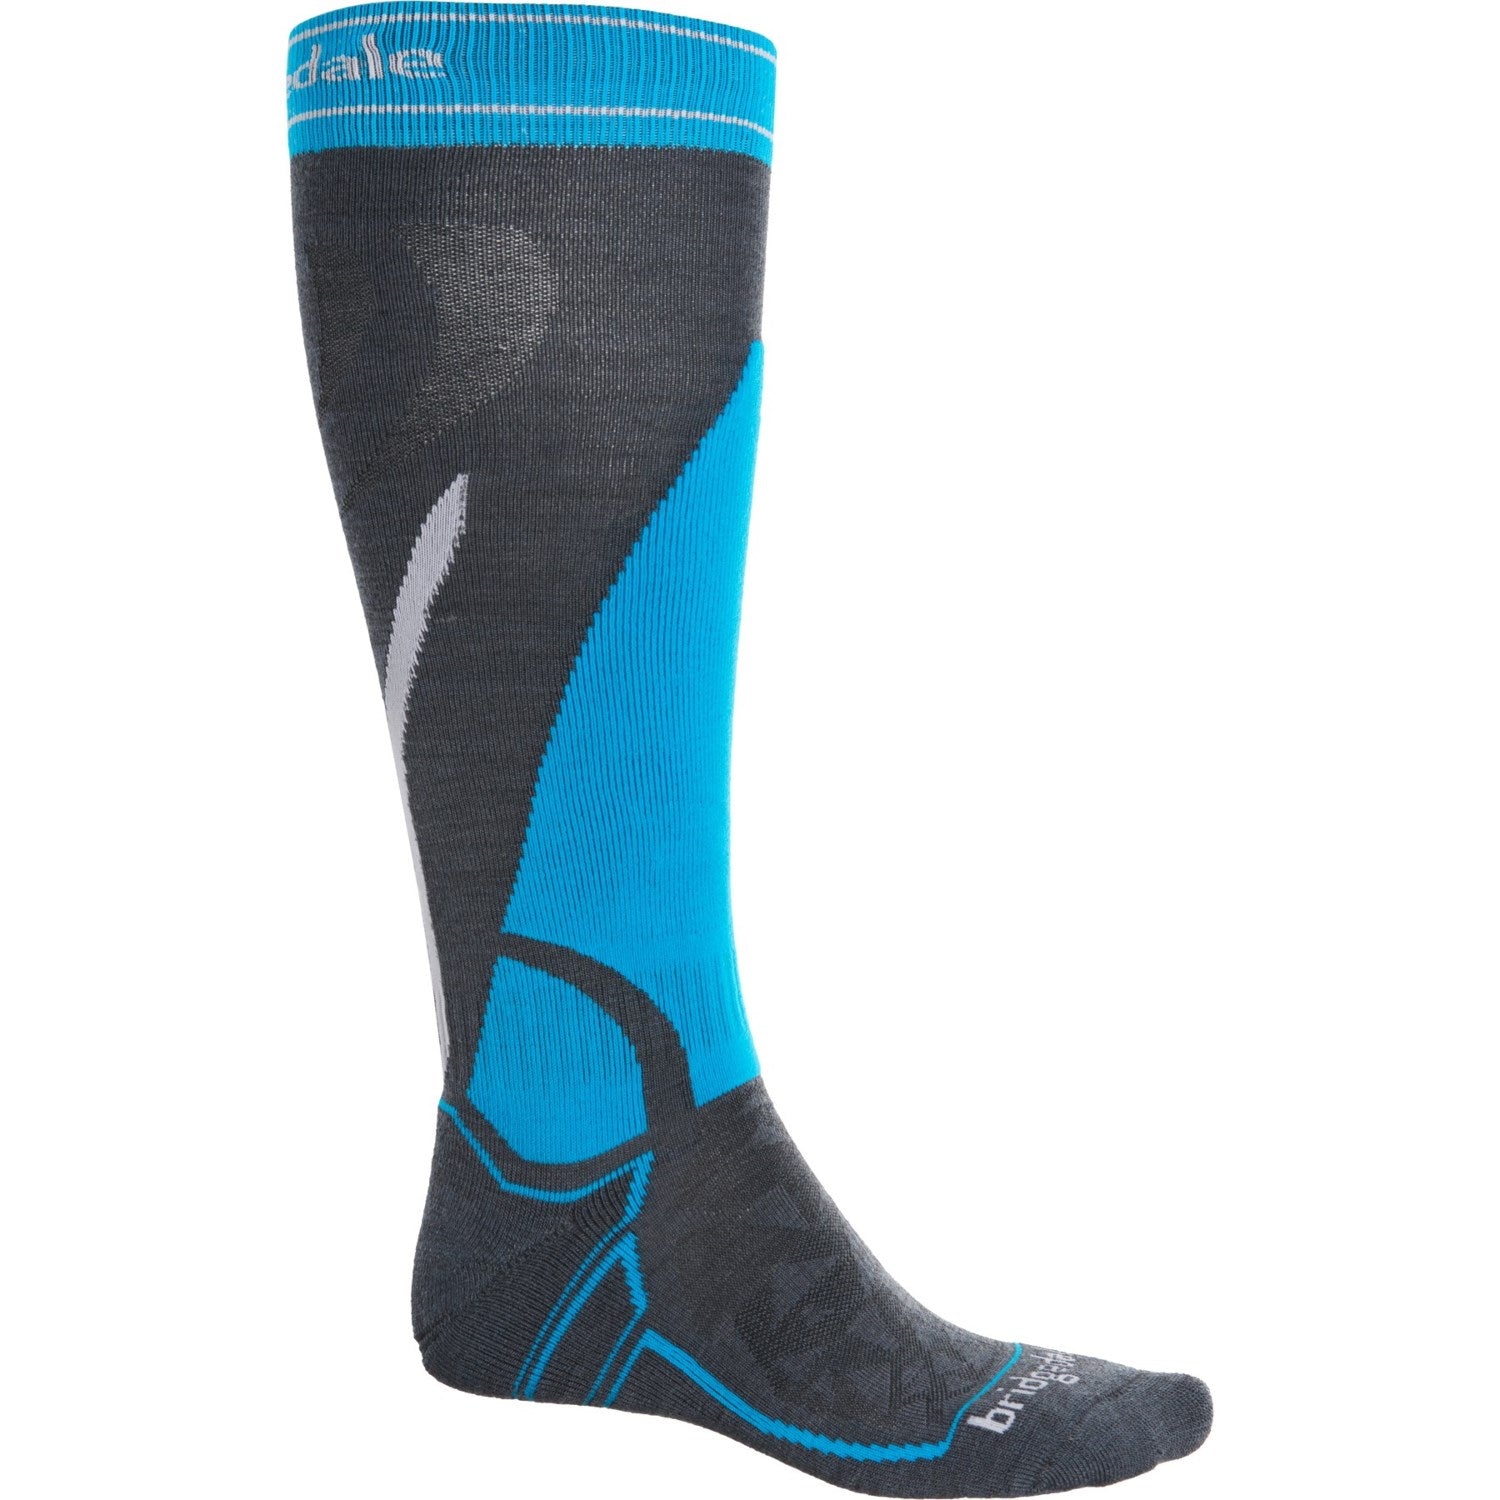 bridgedale-vertige-ski-socks-merino-wool-over-the-calf-for-men-in-gunmetal-blue_p_21nnc_01_1500.2.jpg